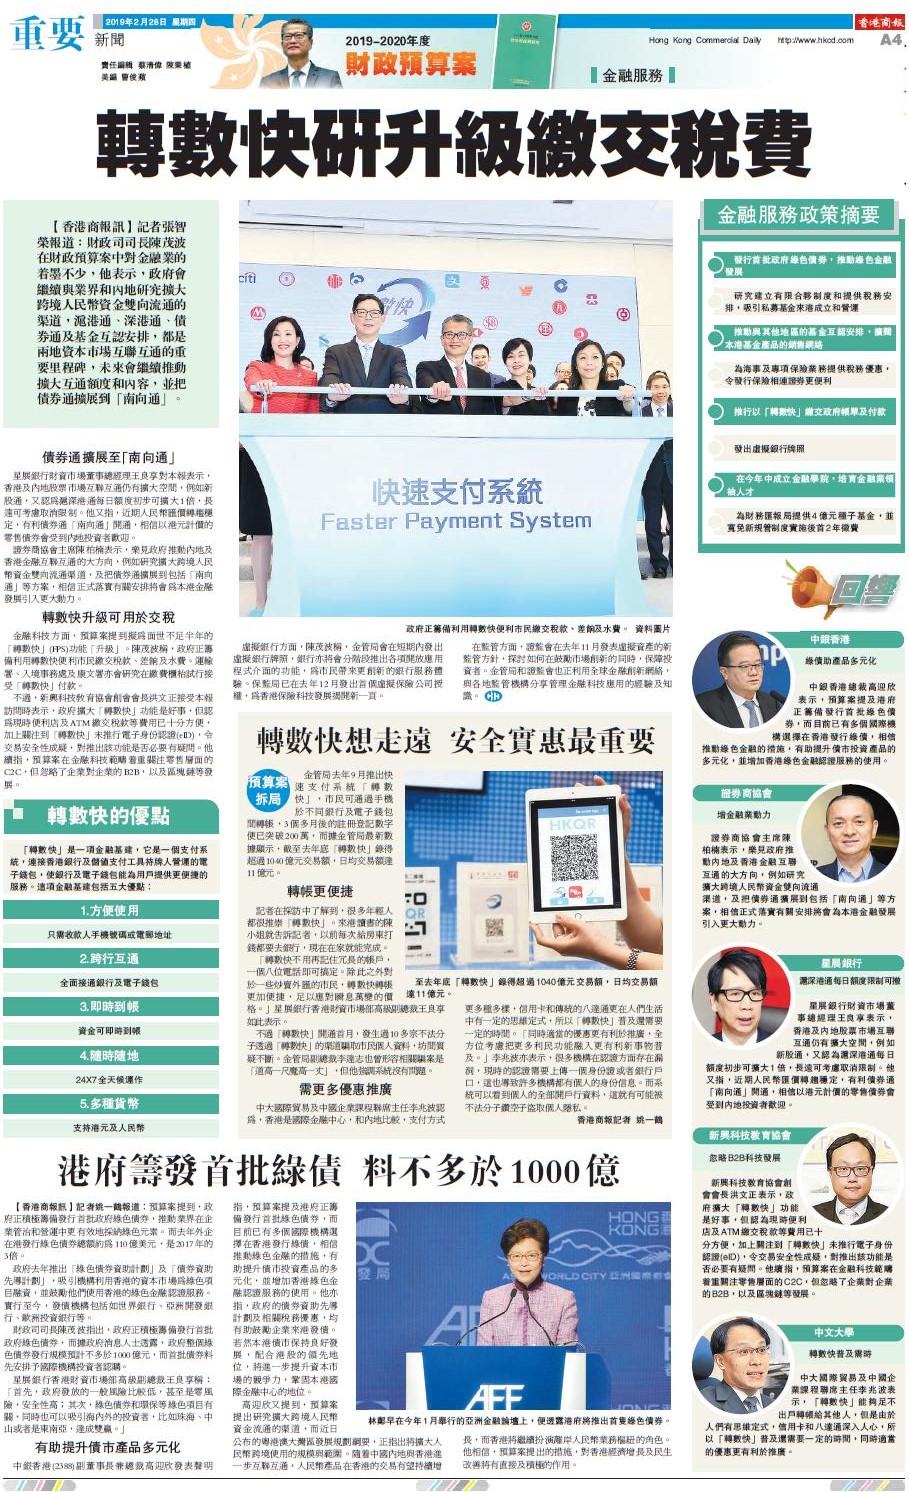 2月28日香港商报A4版